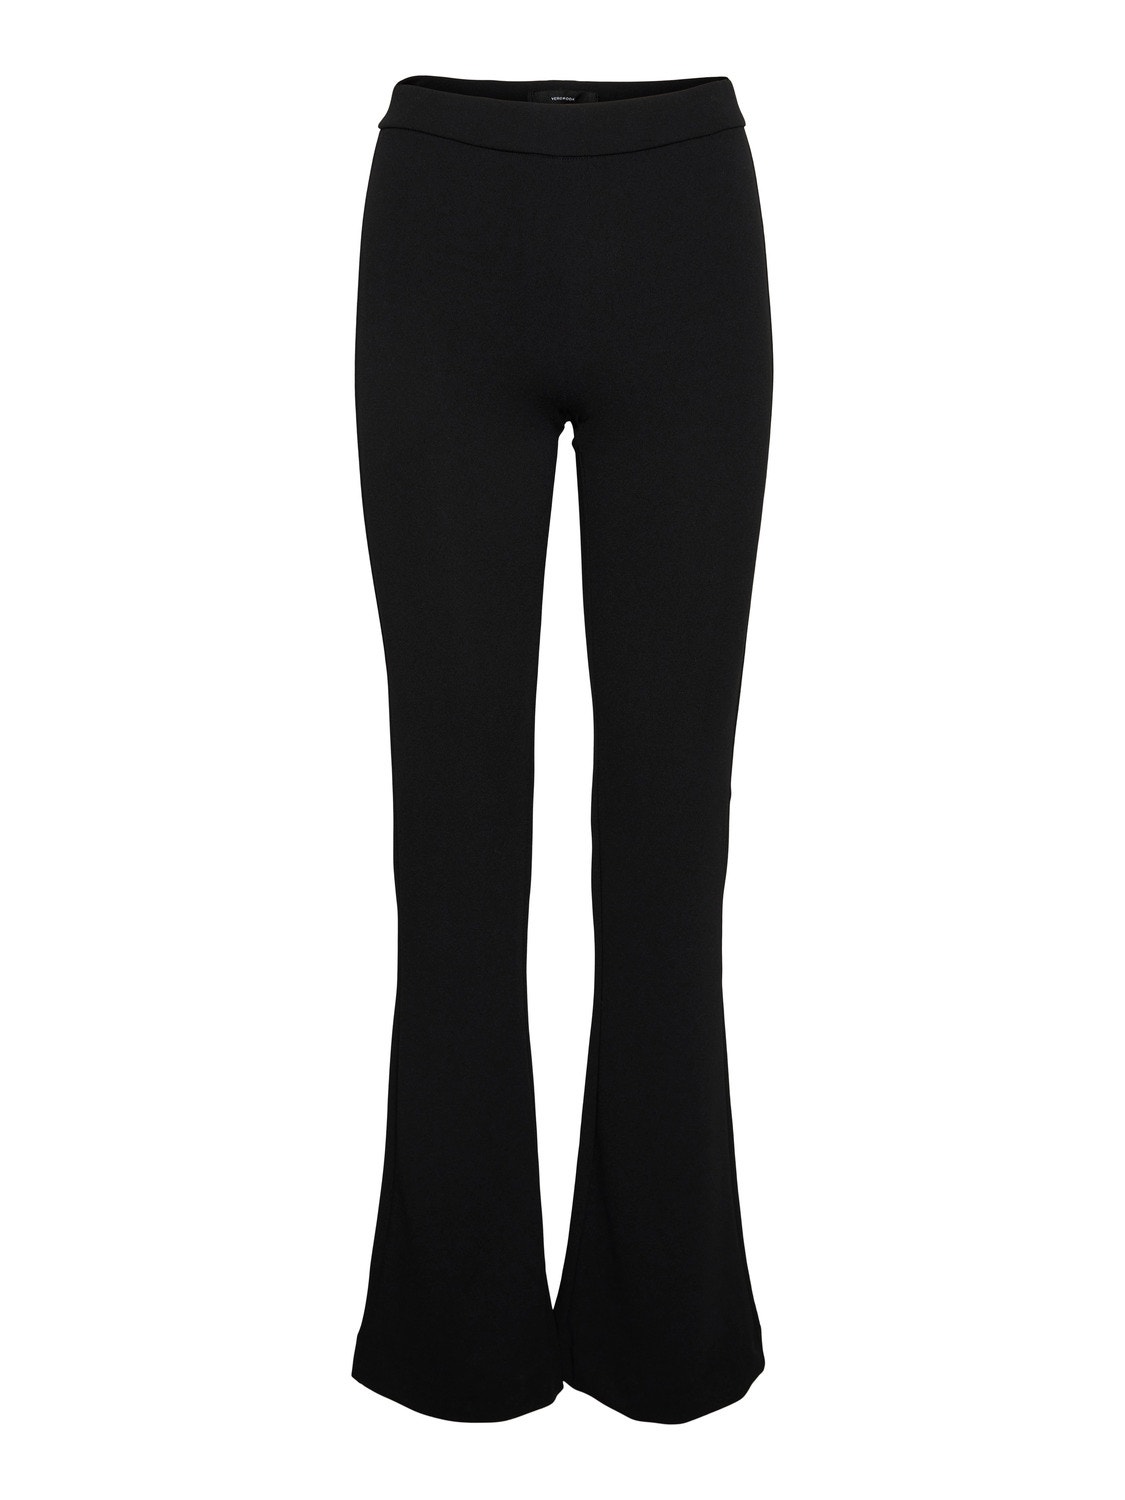 Vero Moda VMKAMMAMIRA Mid waist Trousers -Black - 10279413